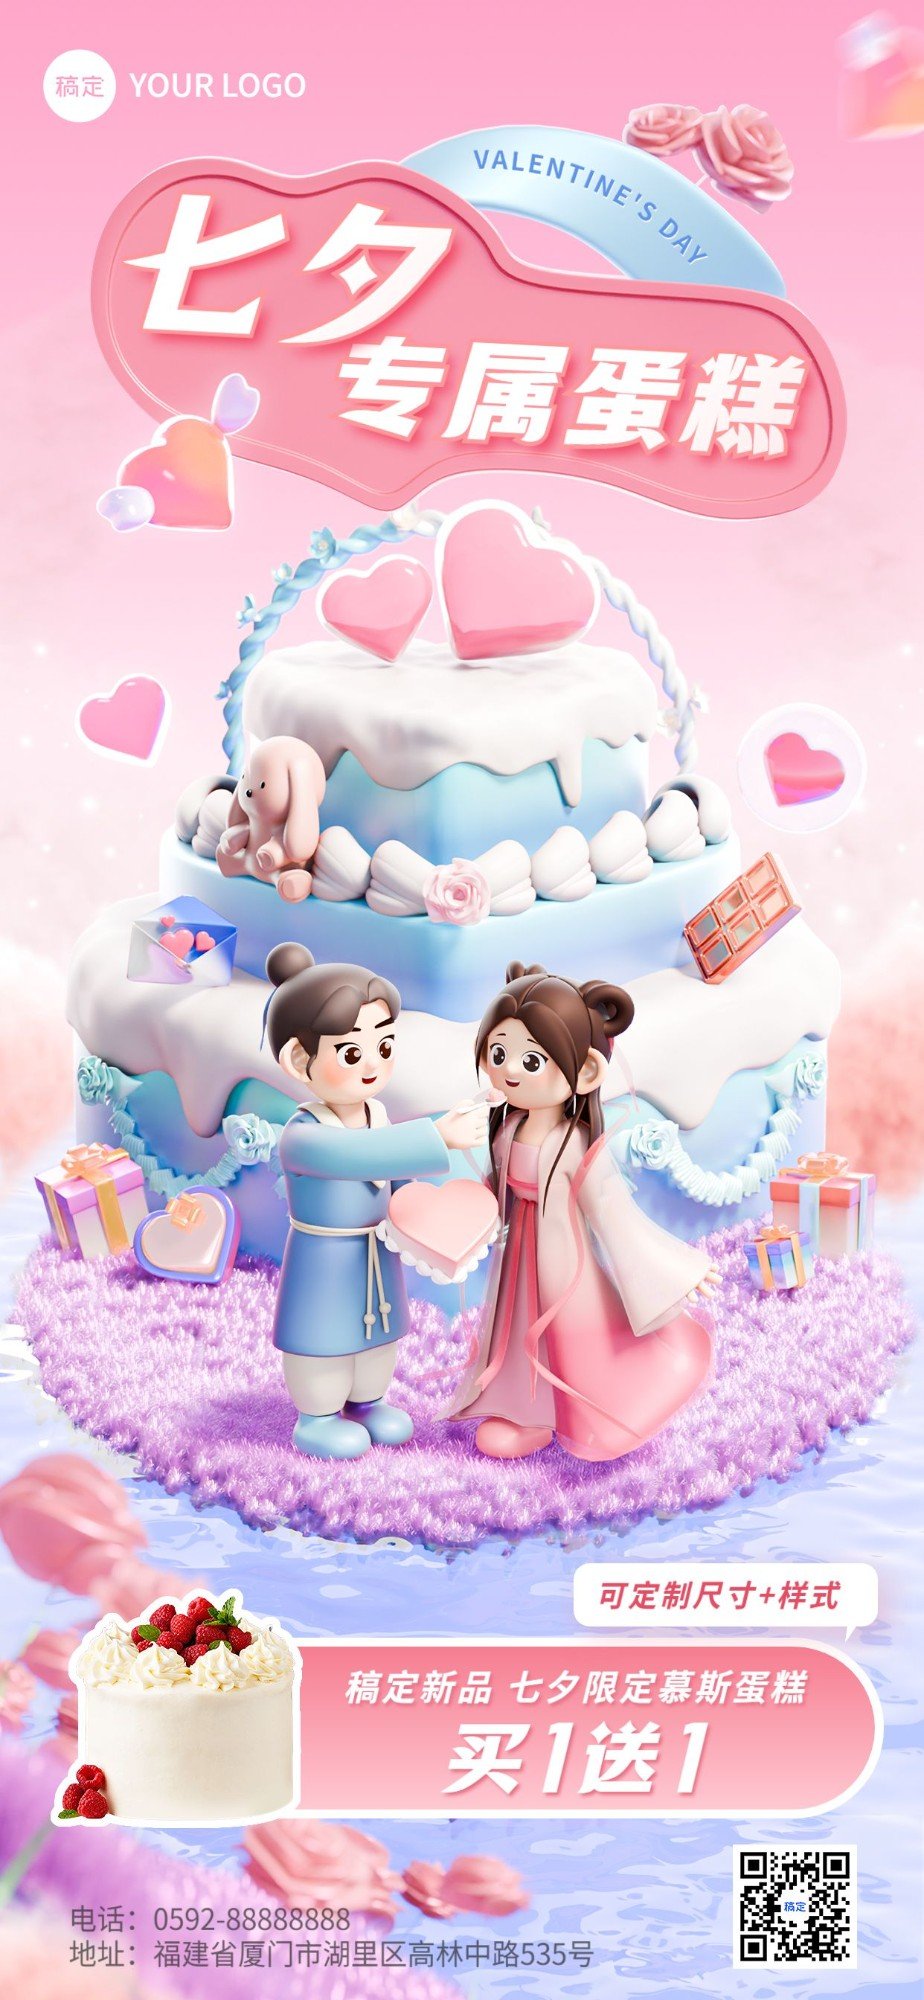 七夕情人节烘焙甜品产品营销软3D小人全屏竖版海报